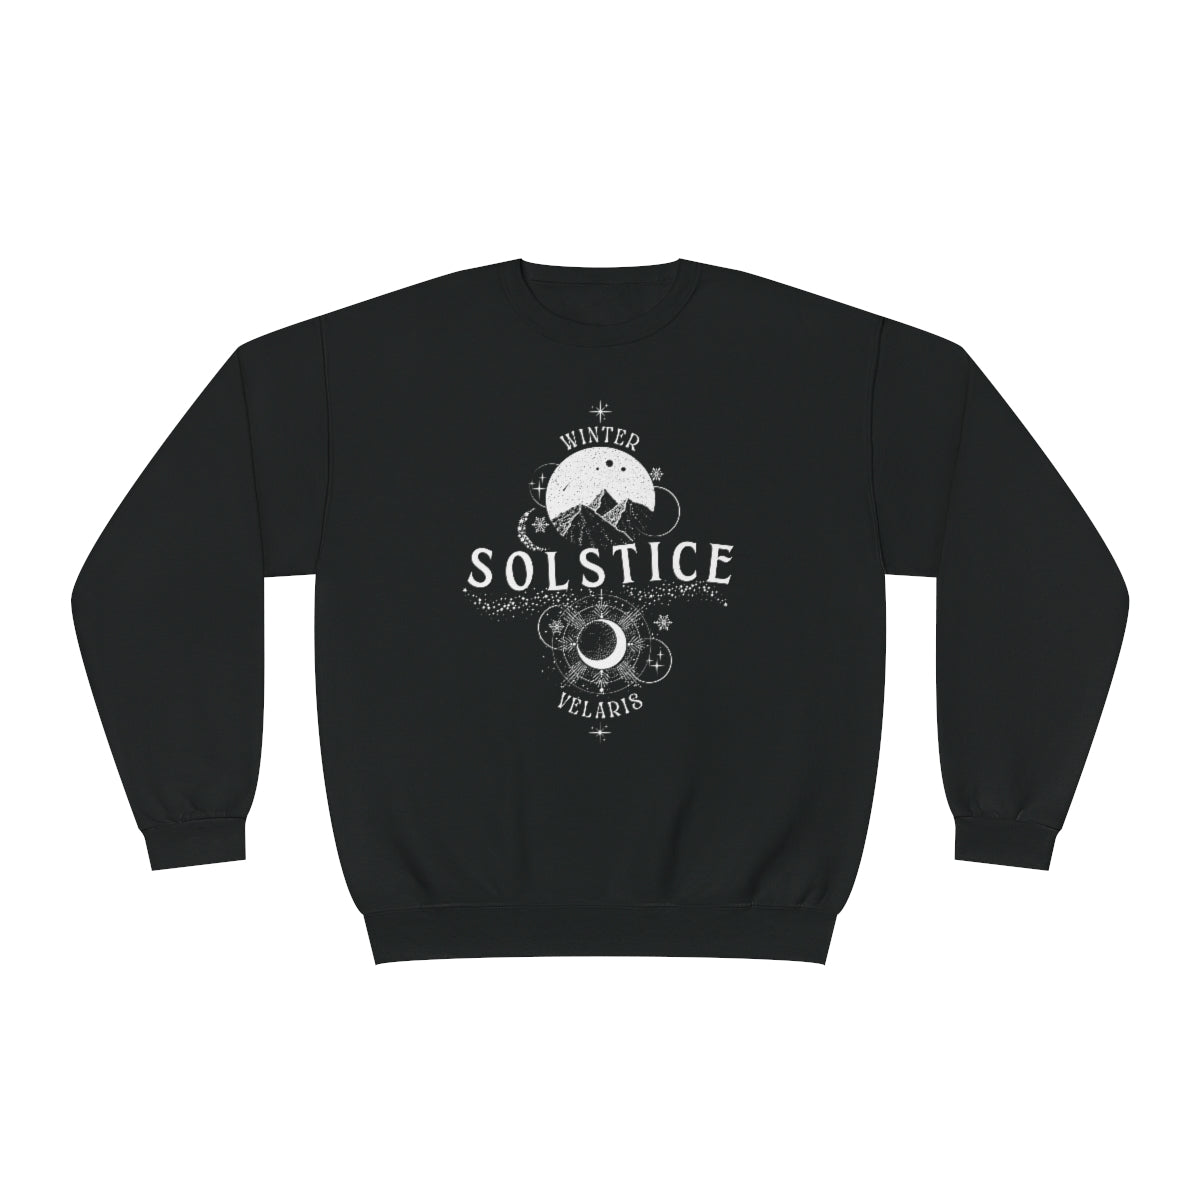 Velaris Winter Solstice Crewneck Sweatshirt